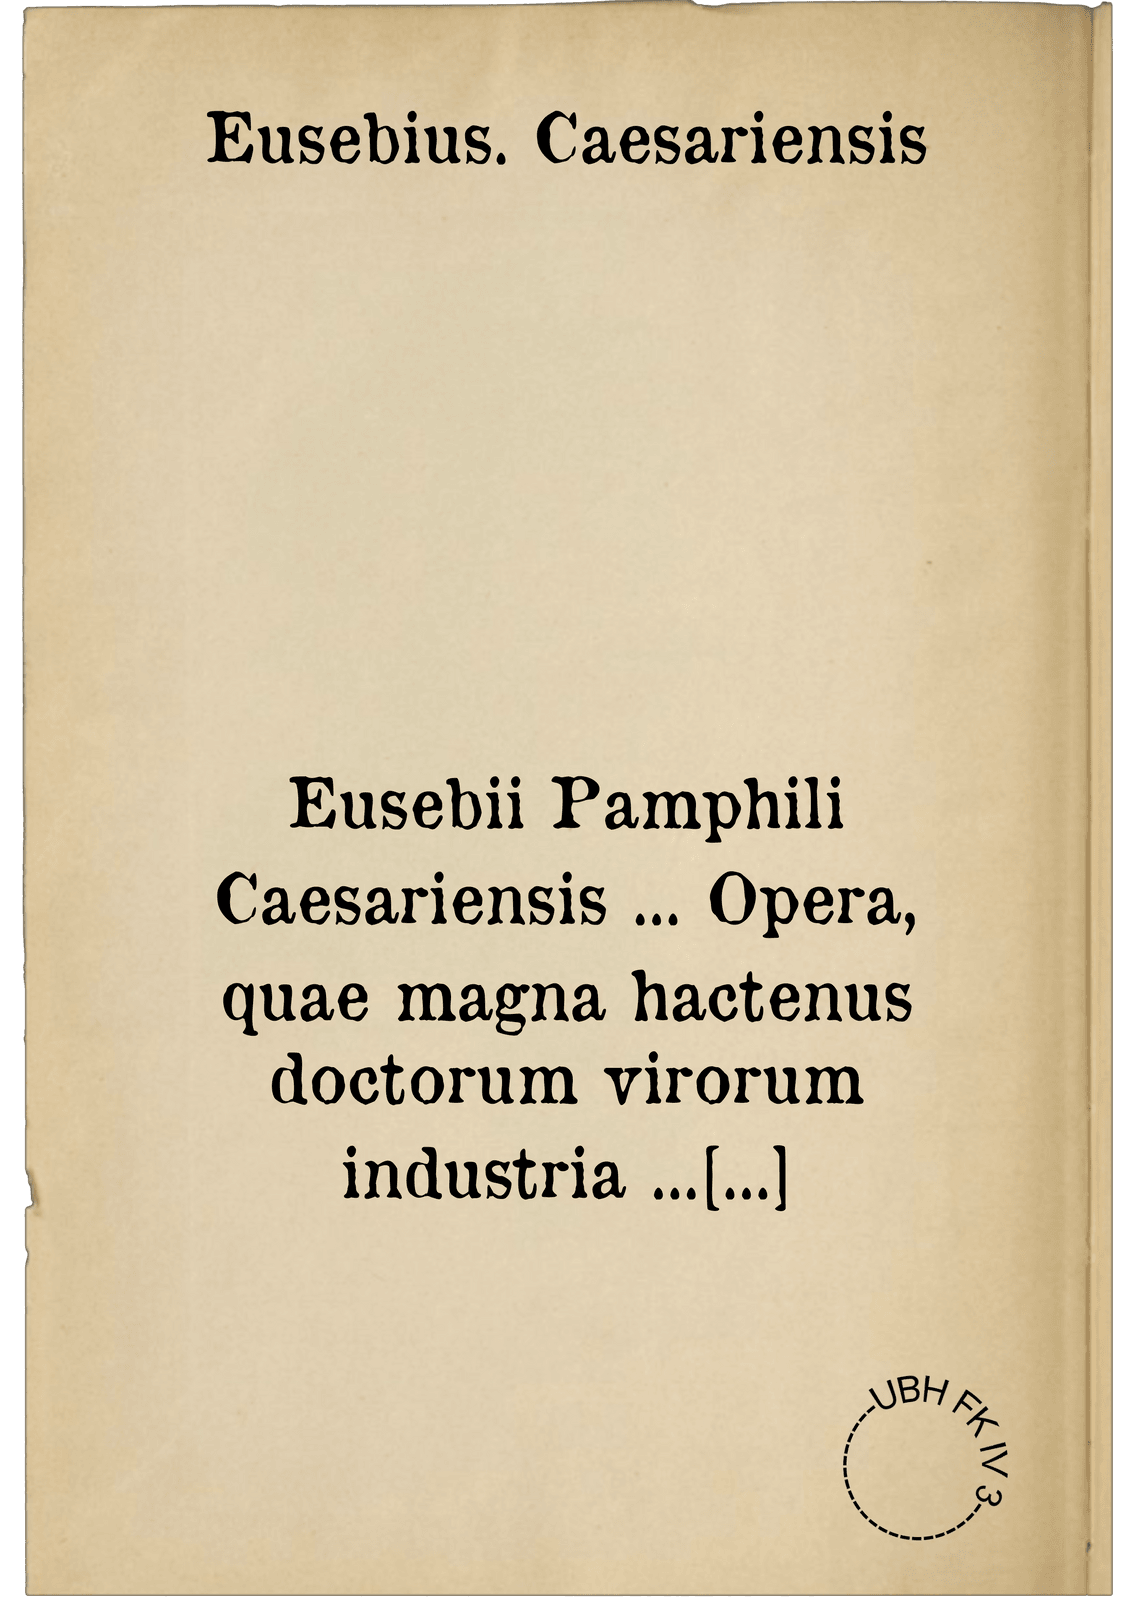 Eusebii Pamphili Caesariensis ... Opera, quae magna hactenus doctorum virorum industria ... inveniri potuerunt: omnia castigatiora & locupletiora, quam antehac unquam edita ...